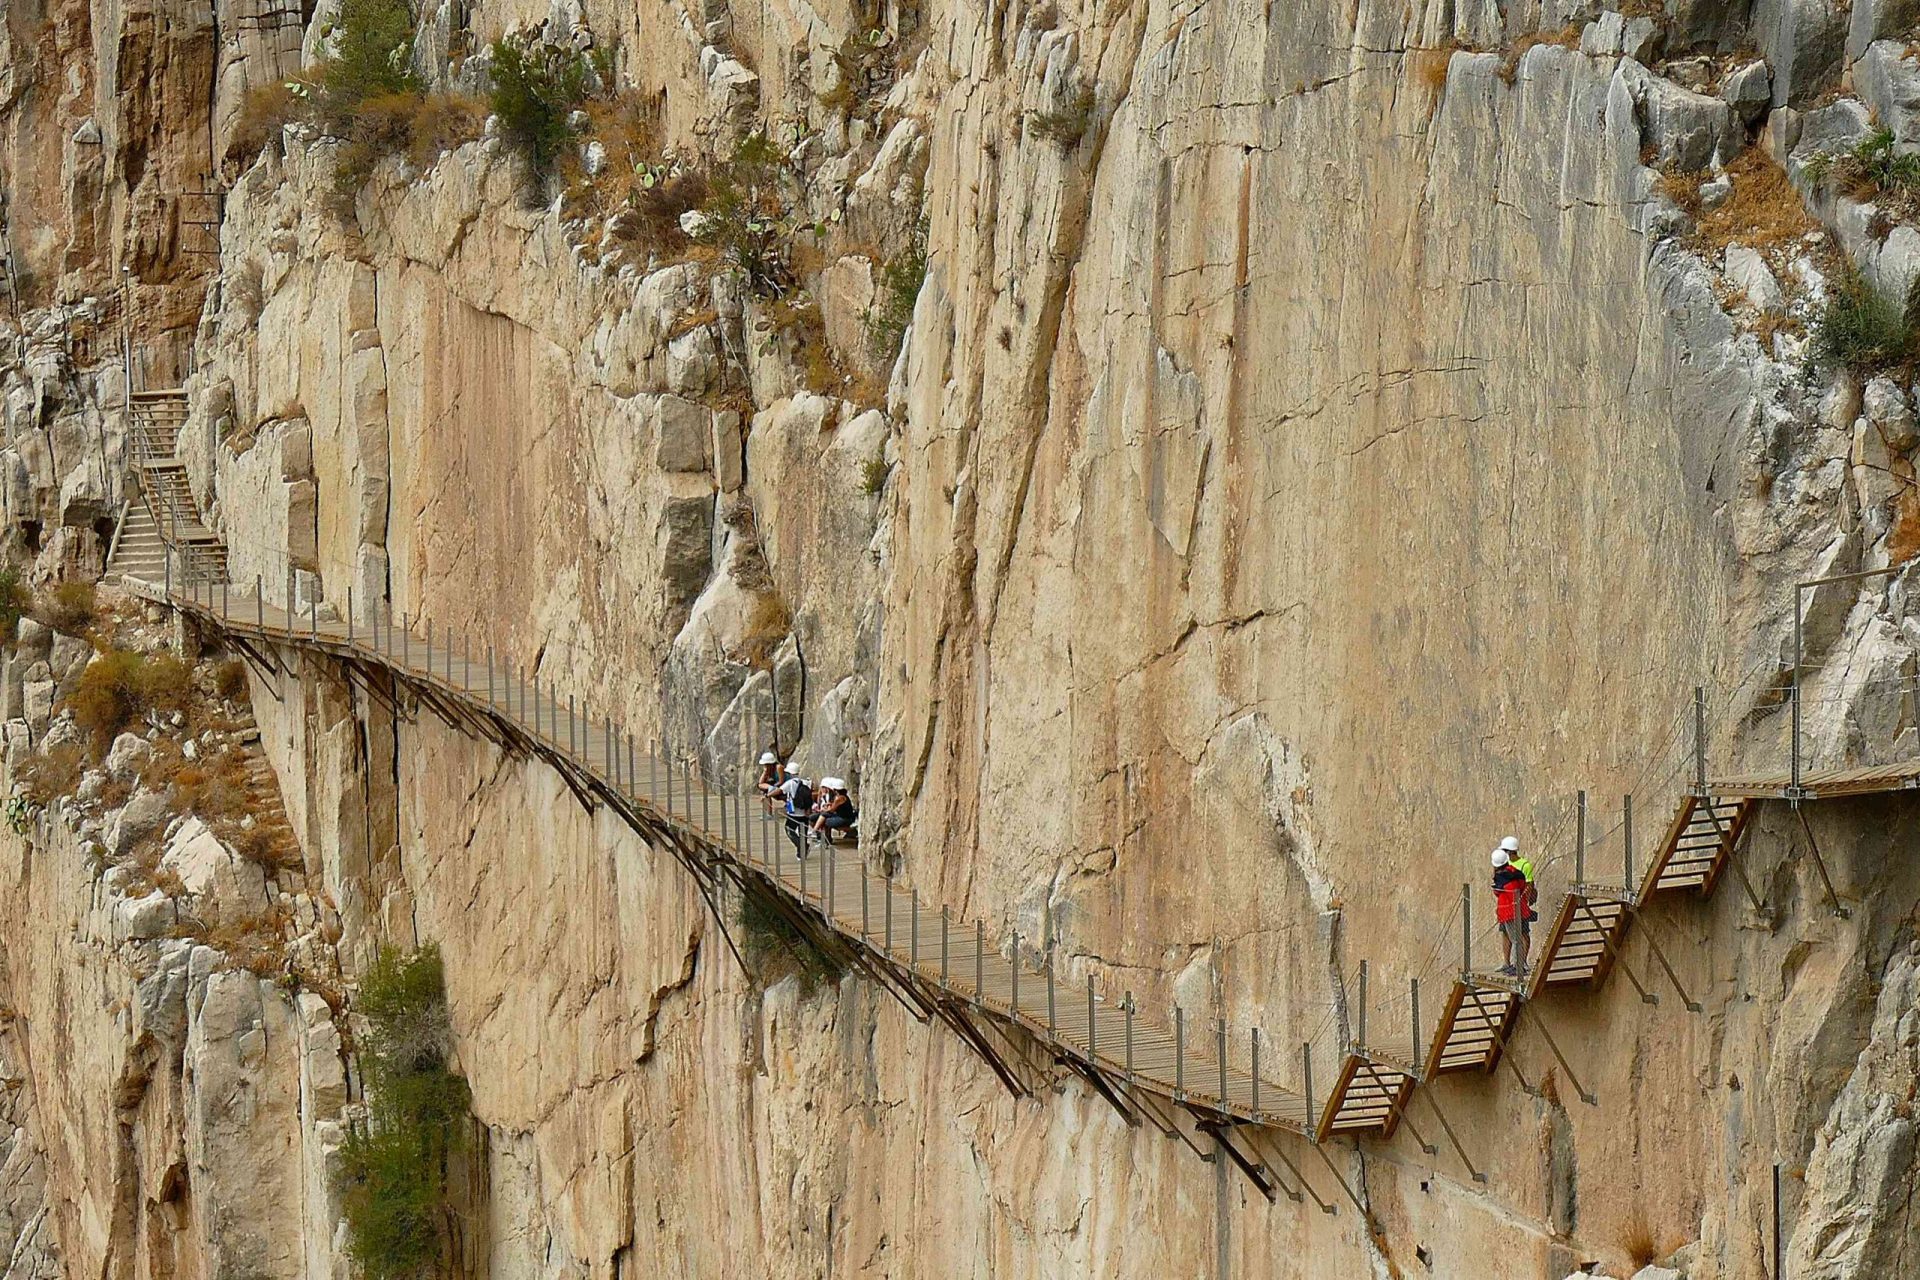 Excursionistas caminando por un estrecho puente a lo largo de un acantilado vertical